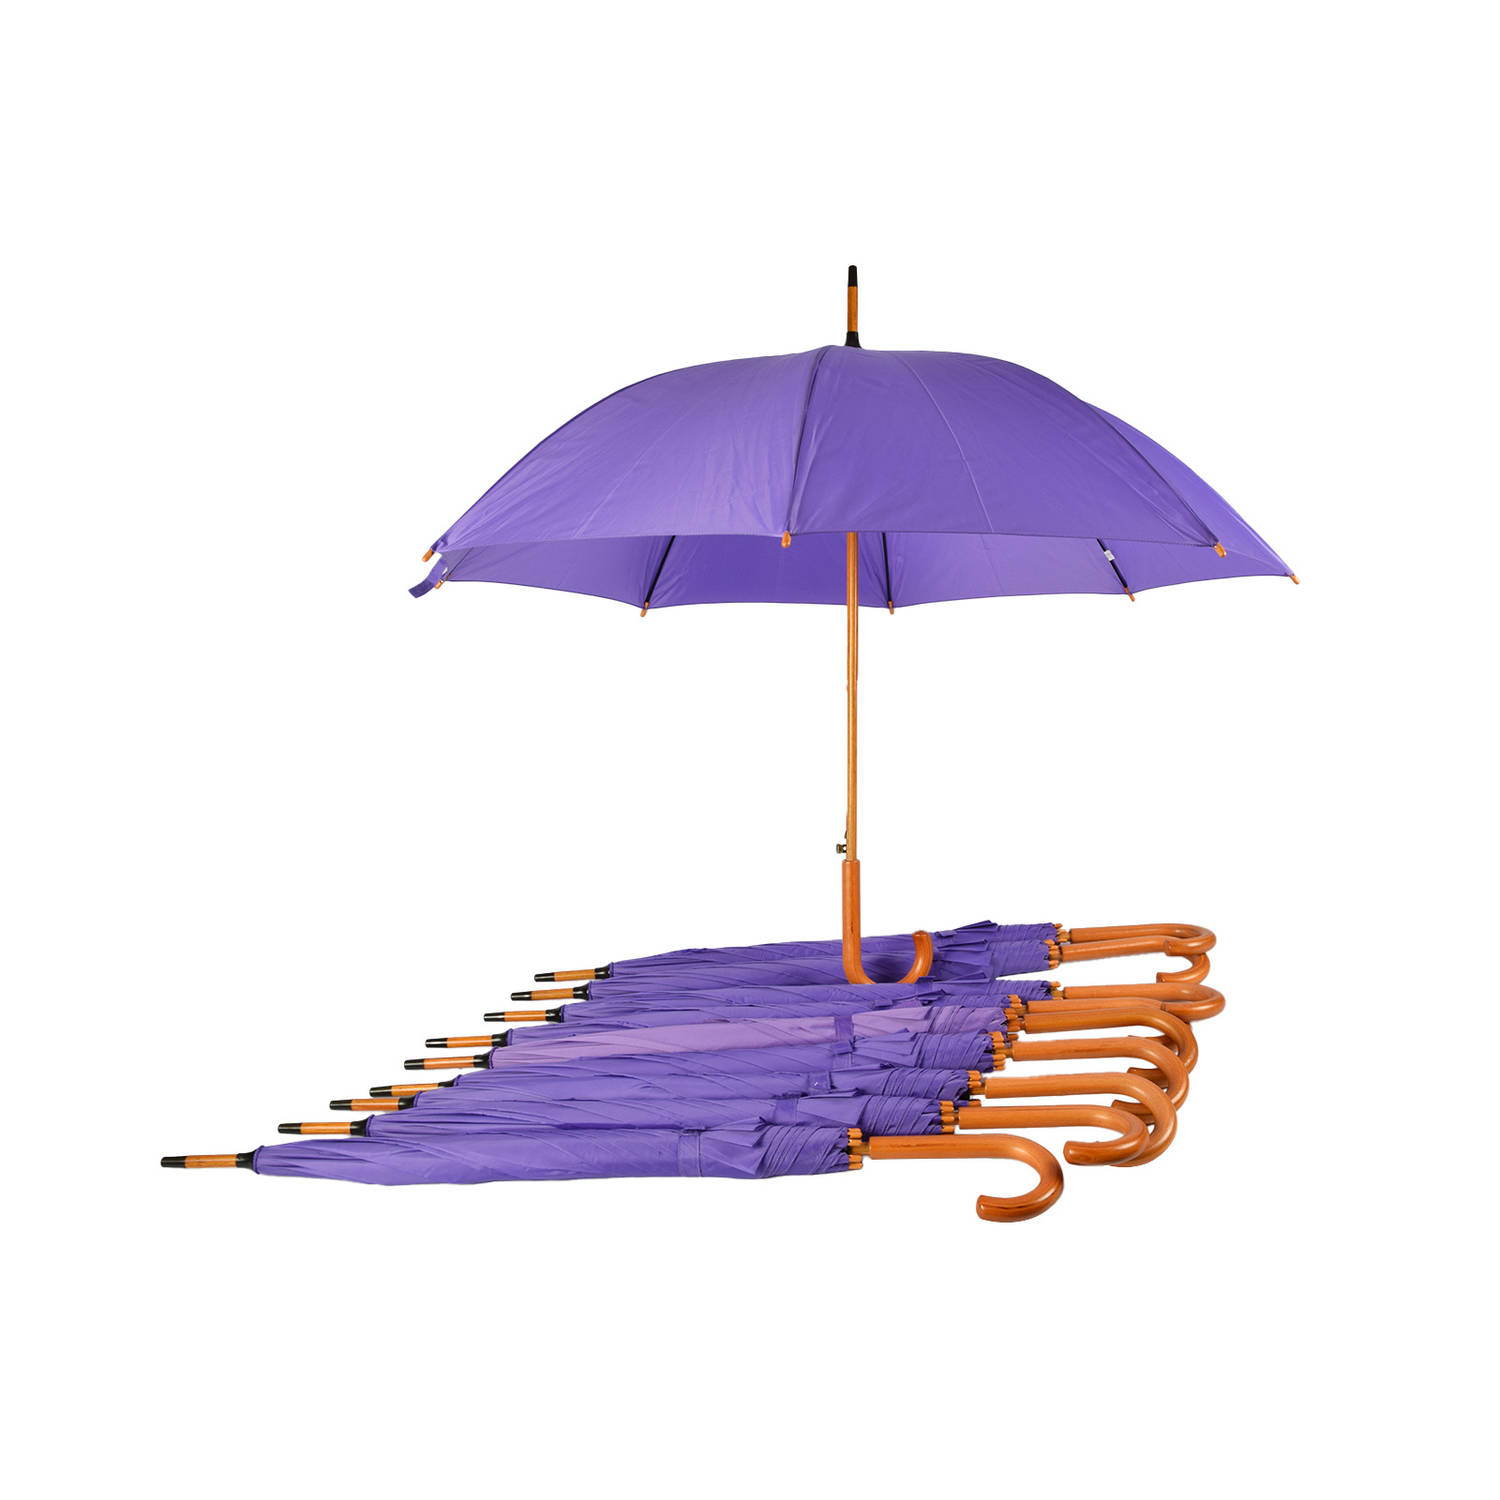 Voordelpak: Set van 10 Paarse Paraplu's - Automatisch Uitklapbaar - Ø 98 cm Paraplu met Houten Handvat - Windproof - Waterdicht